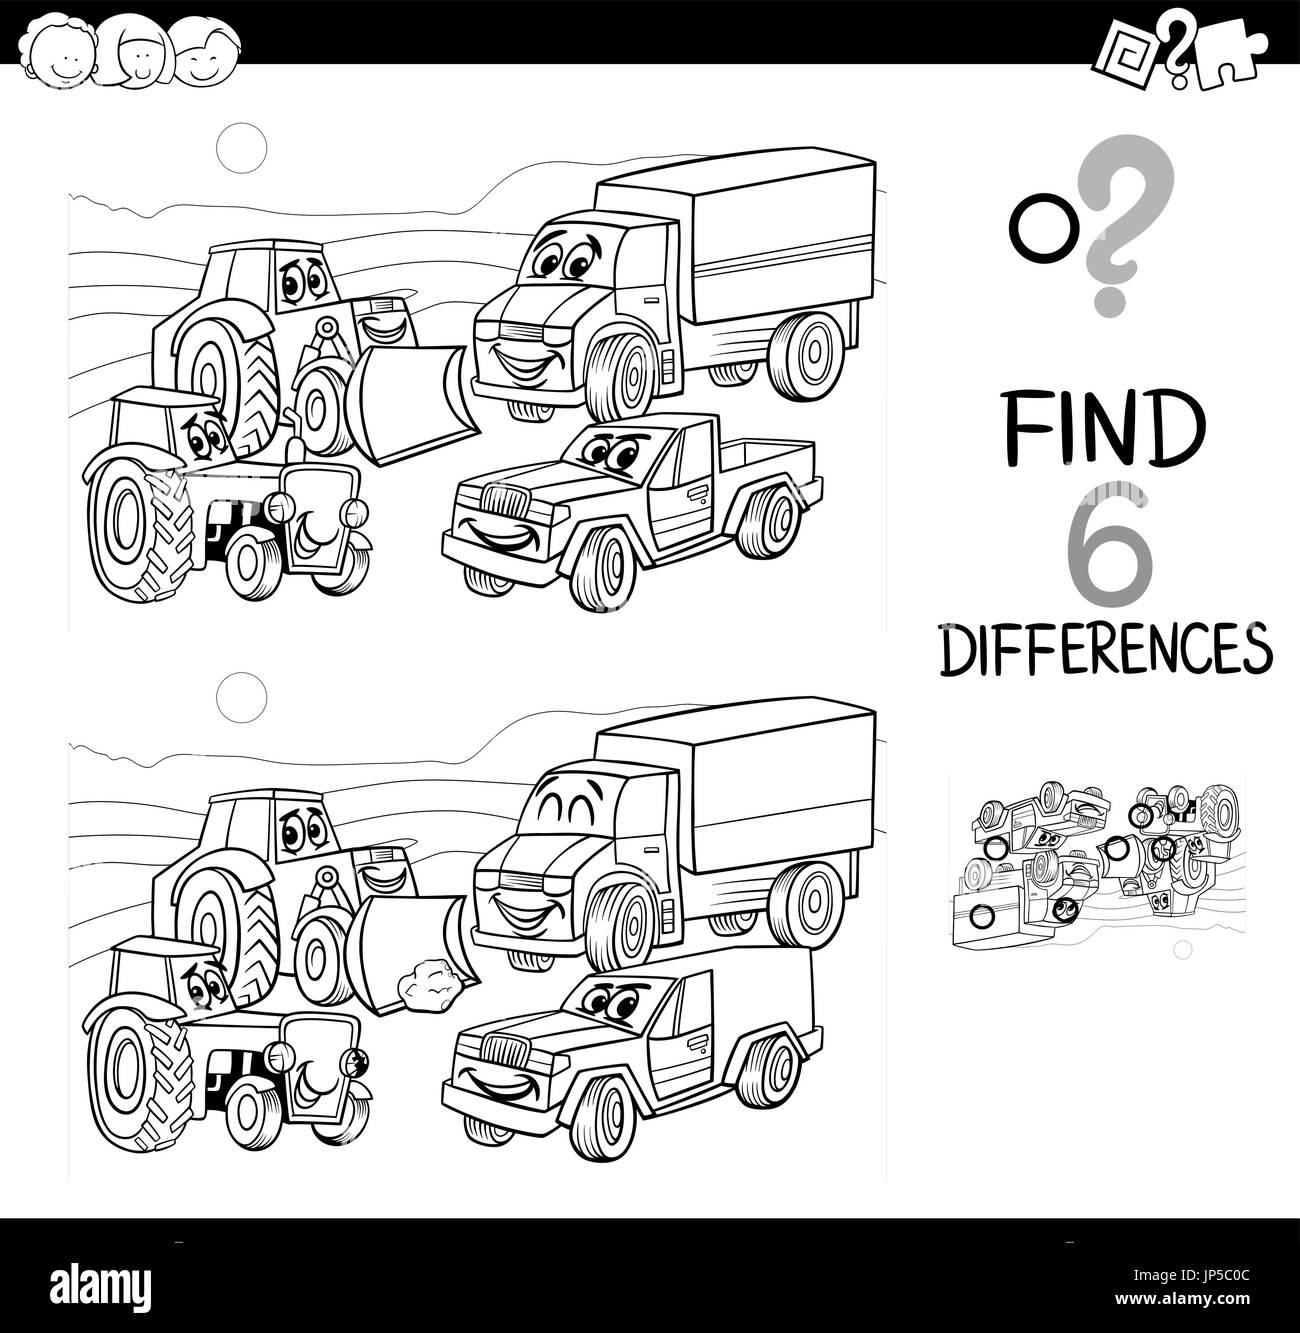 Cartoon noir et blanc Illustration de repérer les différences jeu éducatif pour les enfants avec des voitures et des transports Groupe de personnages Coloriages Illustration de Vecteur